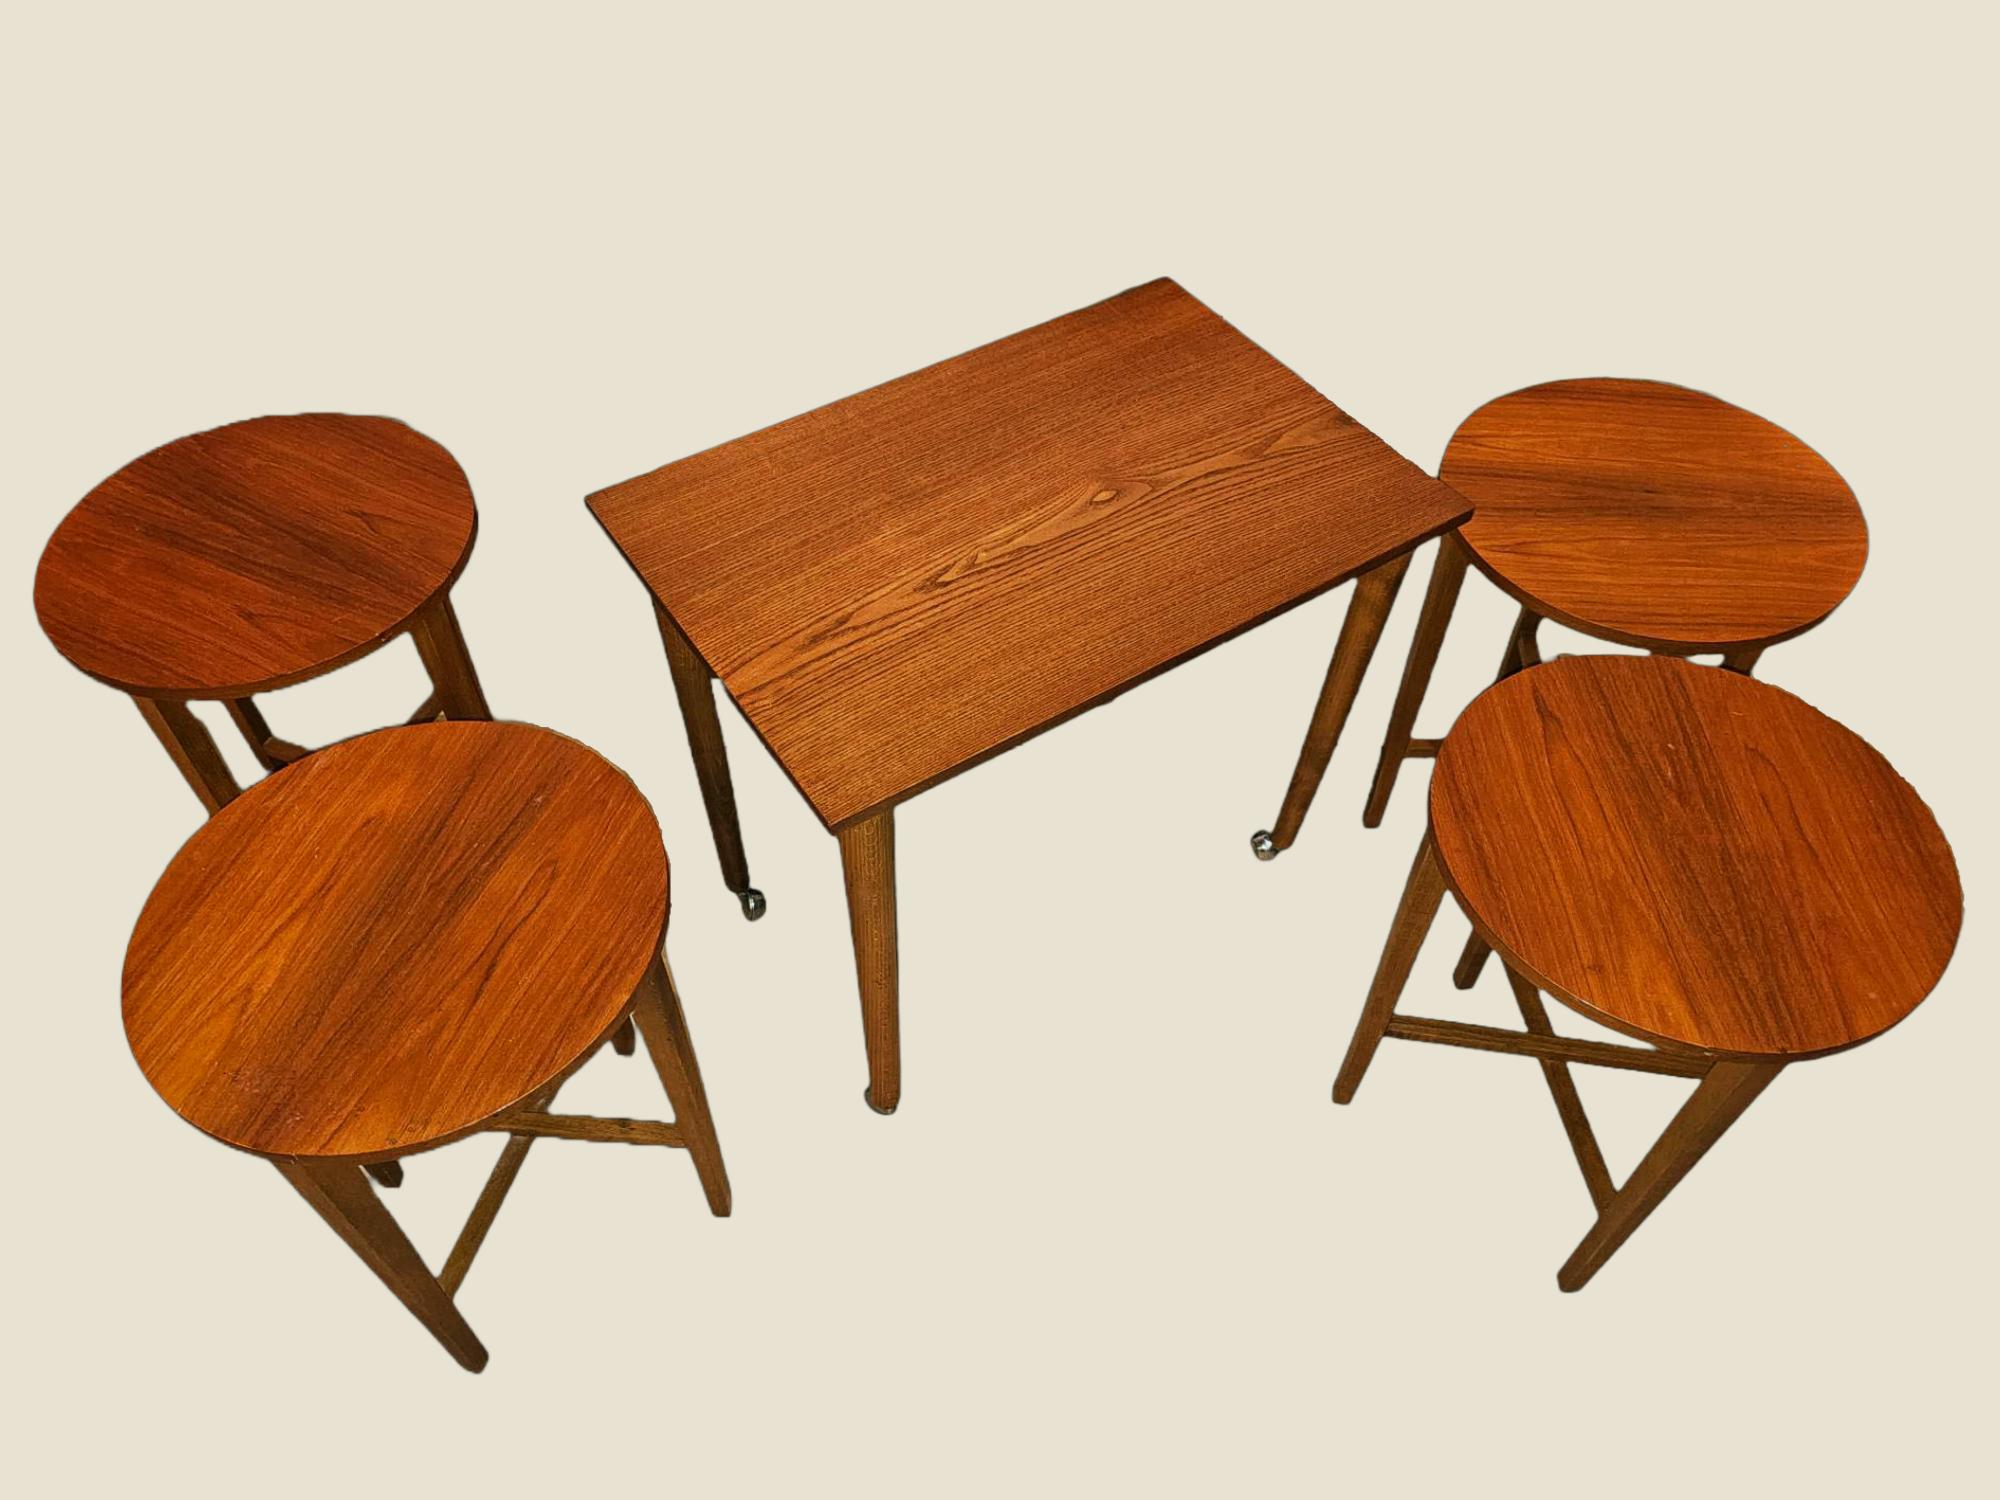 Dieses einzigartige Set wurde von Poul Hundevad für Novy Domov entworfen und stammt aus den späten 1960er Jahren. Der größte Tisch ist rechteckig und mit Rädern ausgestattet und beherbergt 4 klappbare runde Tische, von denen jeder zusammengeklappt